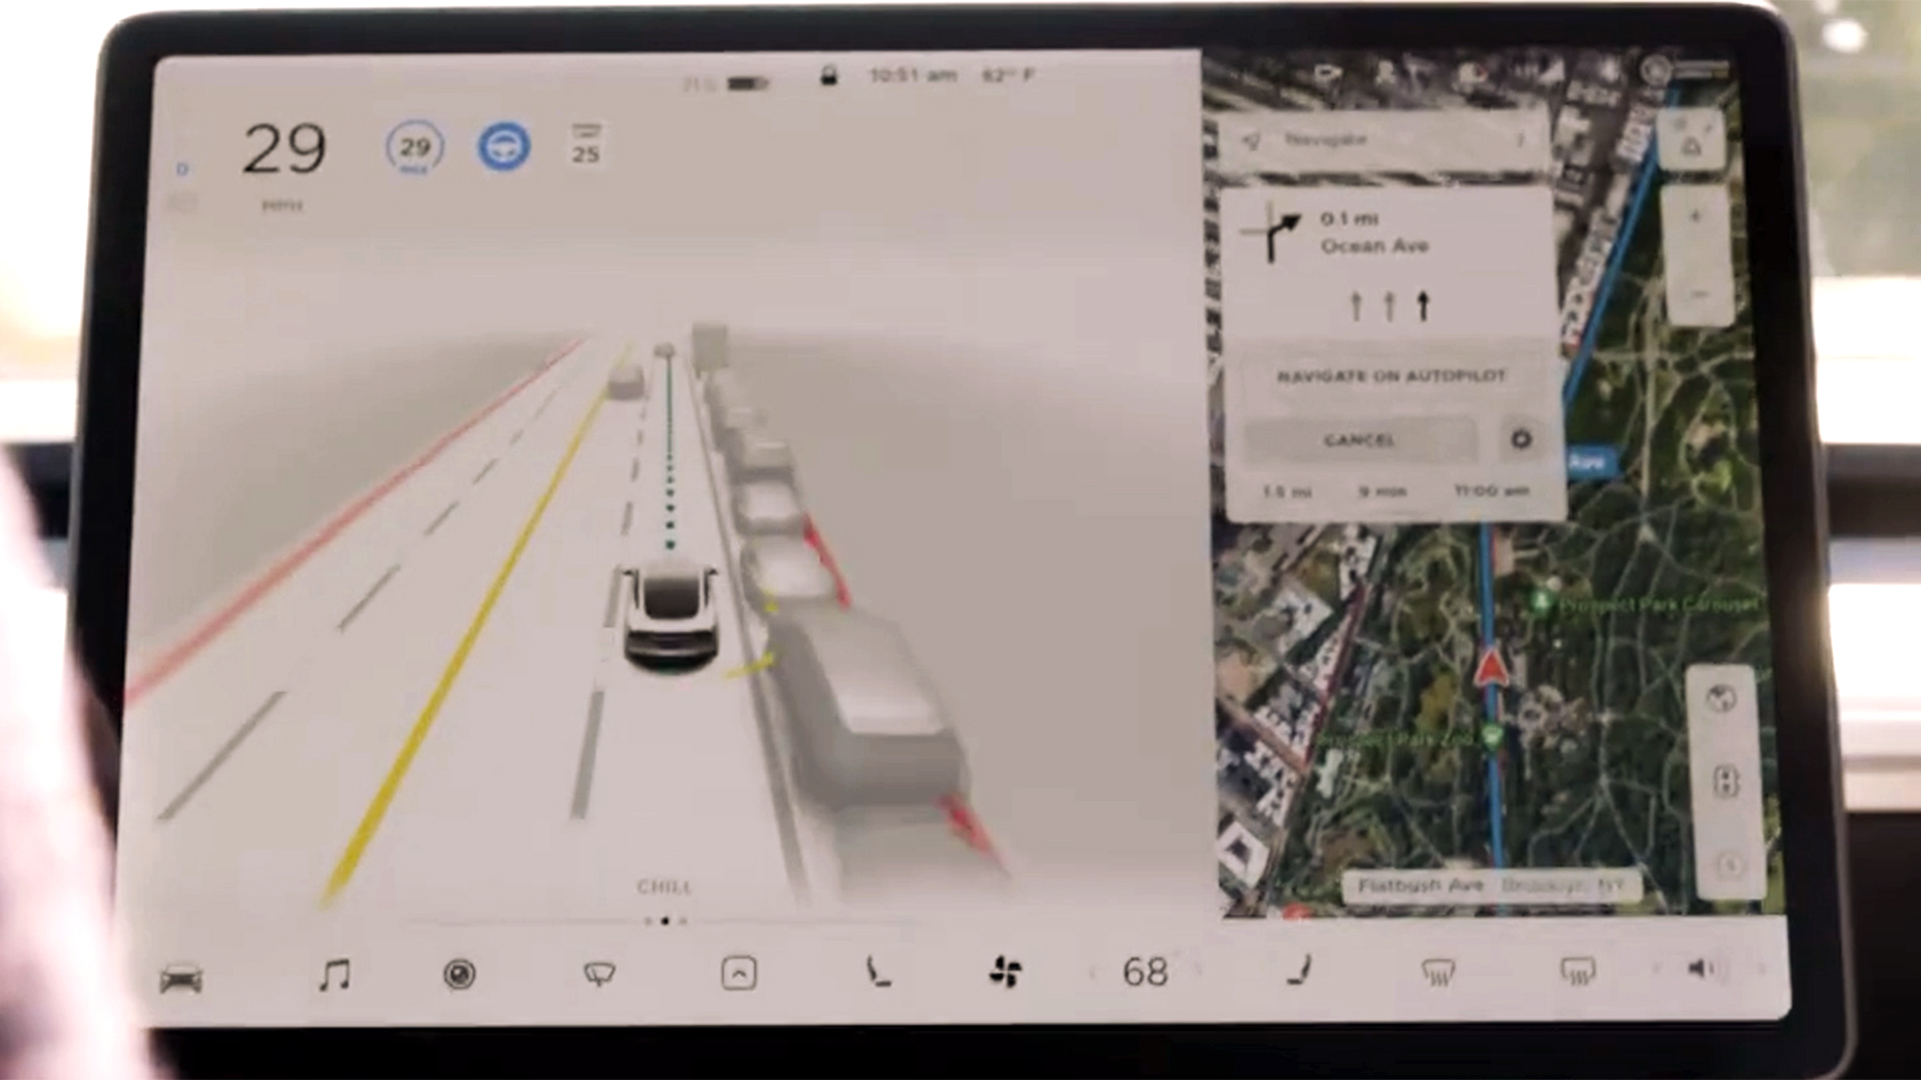 Los Tesla con Autopilot tienen cámaras de alta definición en lugar de radares láser LIDAR. Si este fuera el problema que causó los accidentes, el costo de la actualización podría ser muy alto para la marca